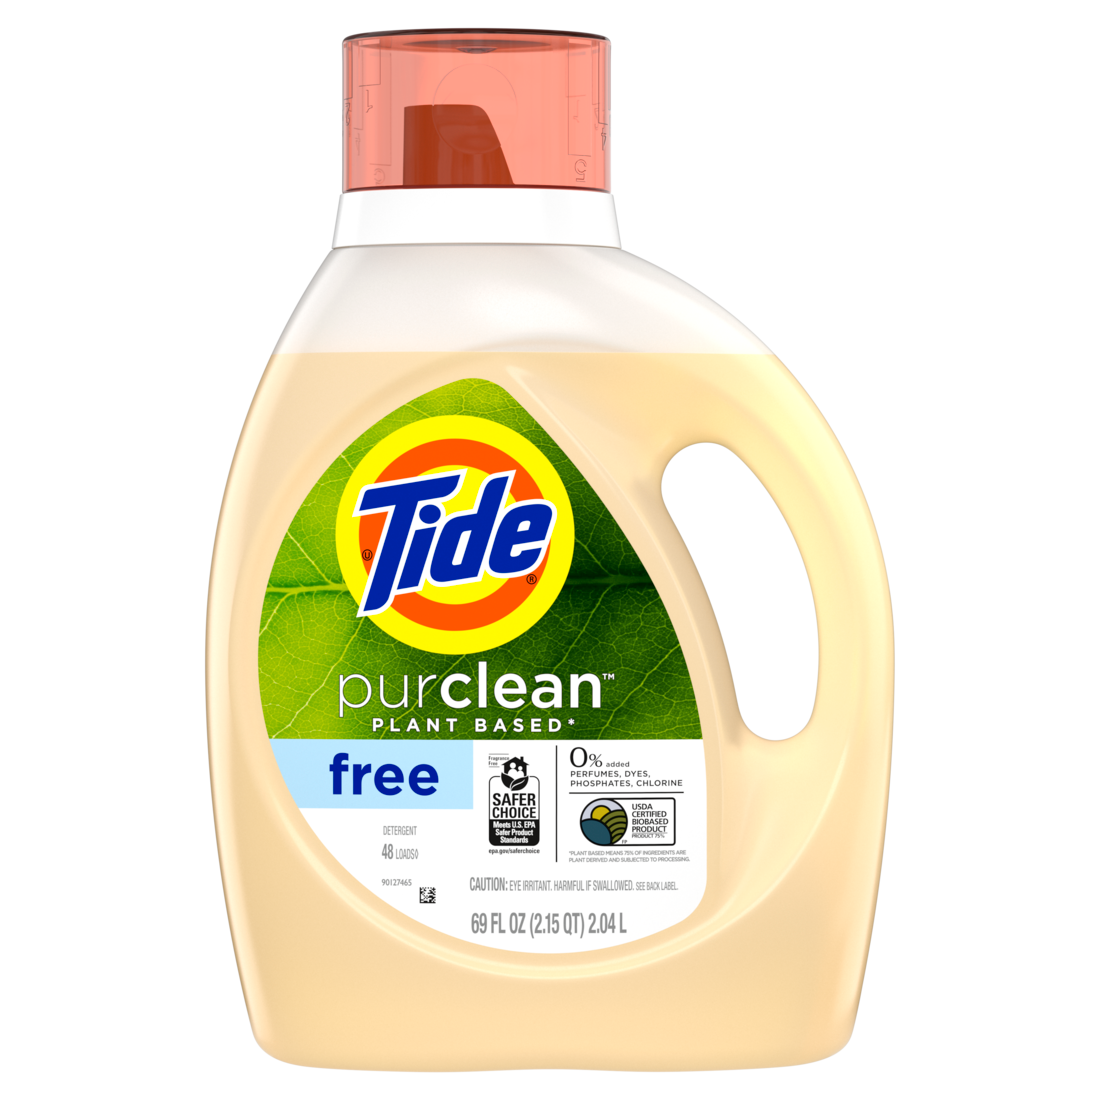 Tide purclean Liquid Detergent, Unscented 75% Plant-Based 48 loads - 69oz/4pk